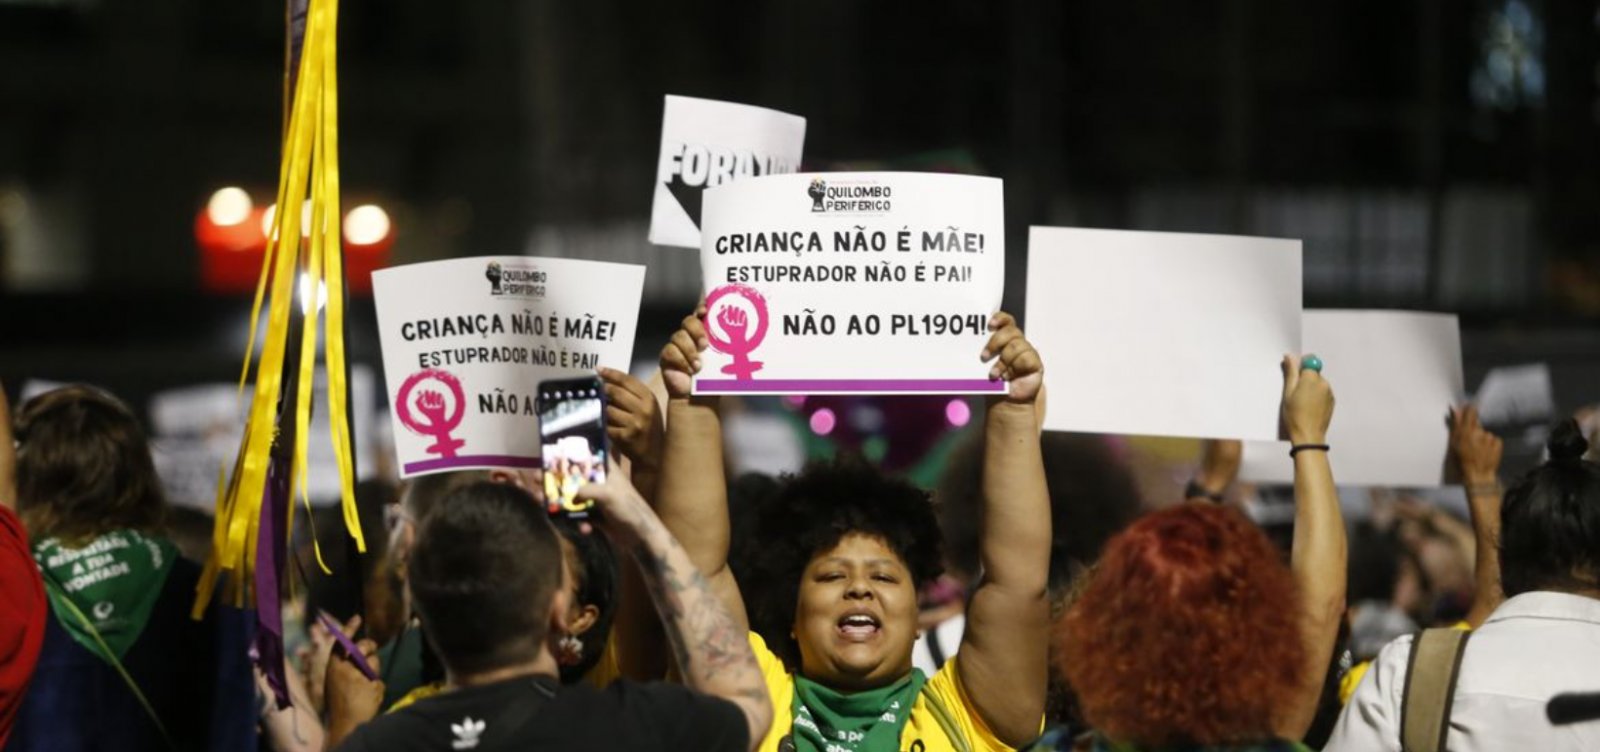 Cerca de 40% das vítimas de estupro no Brasil são crianças e adolescentes negras